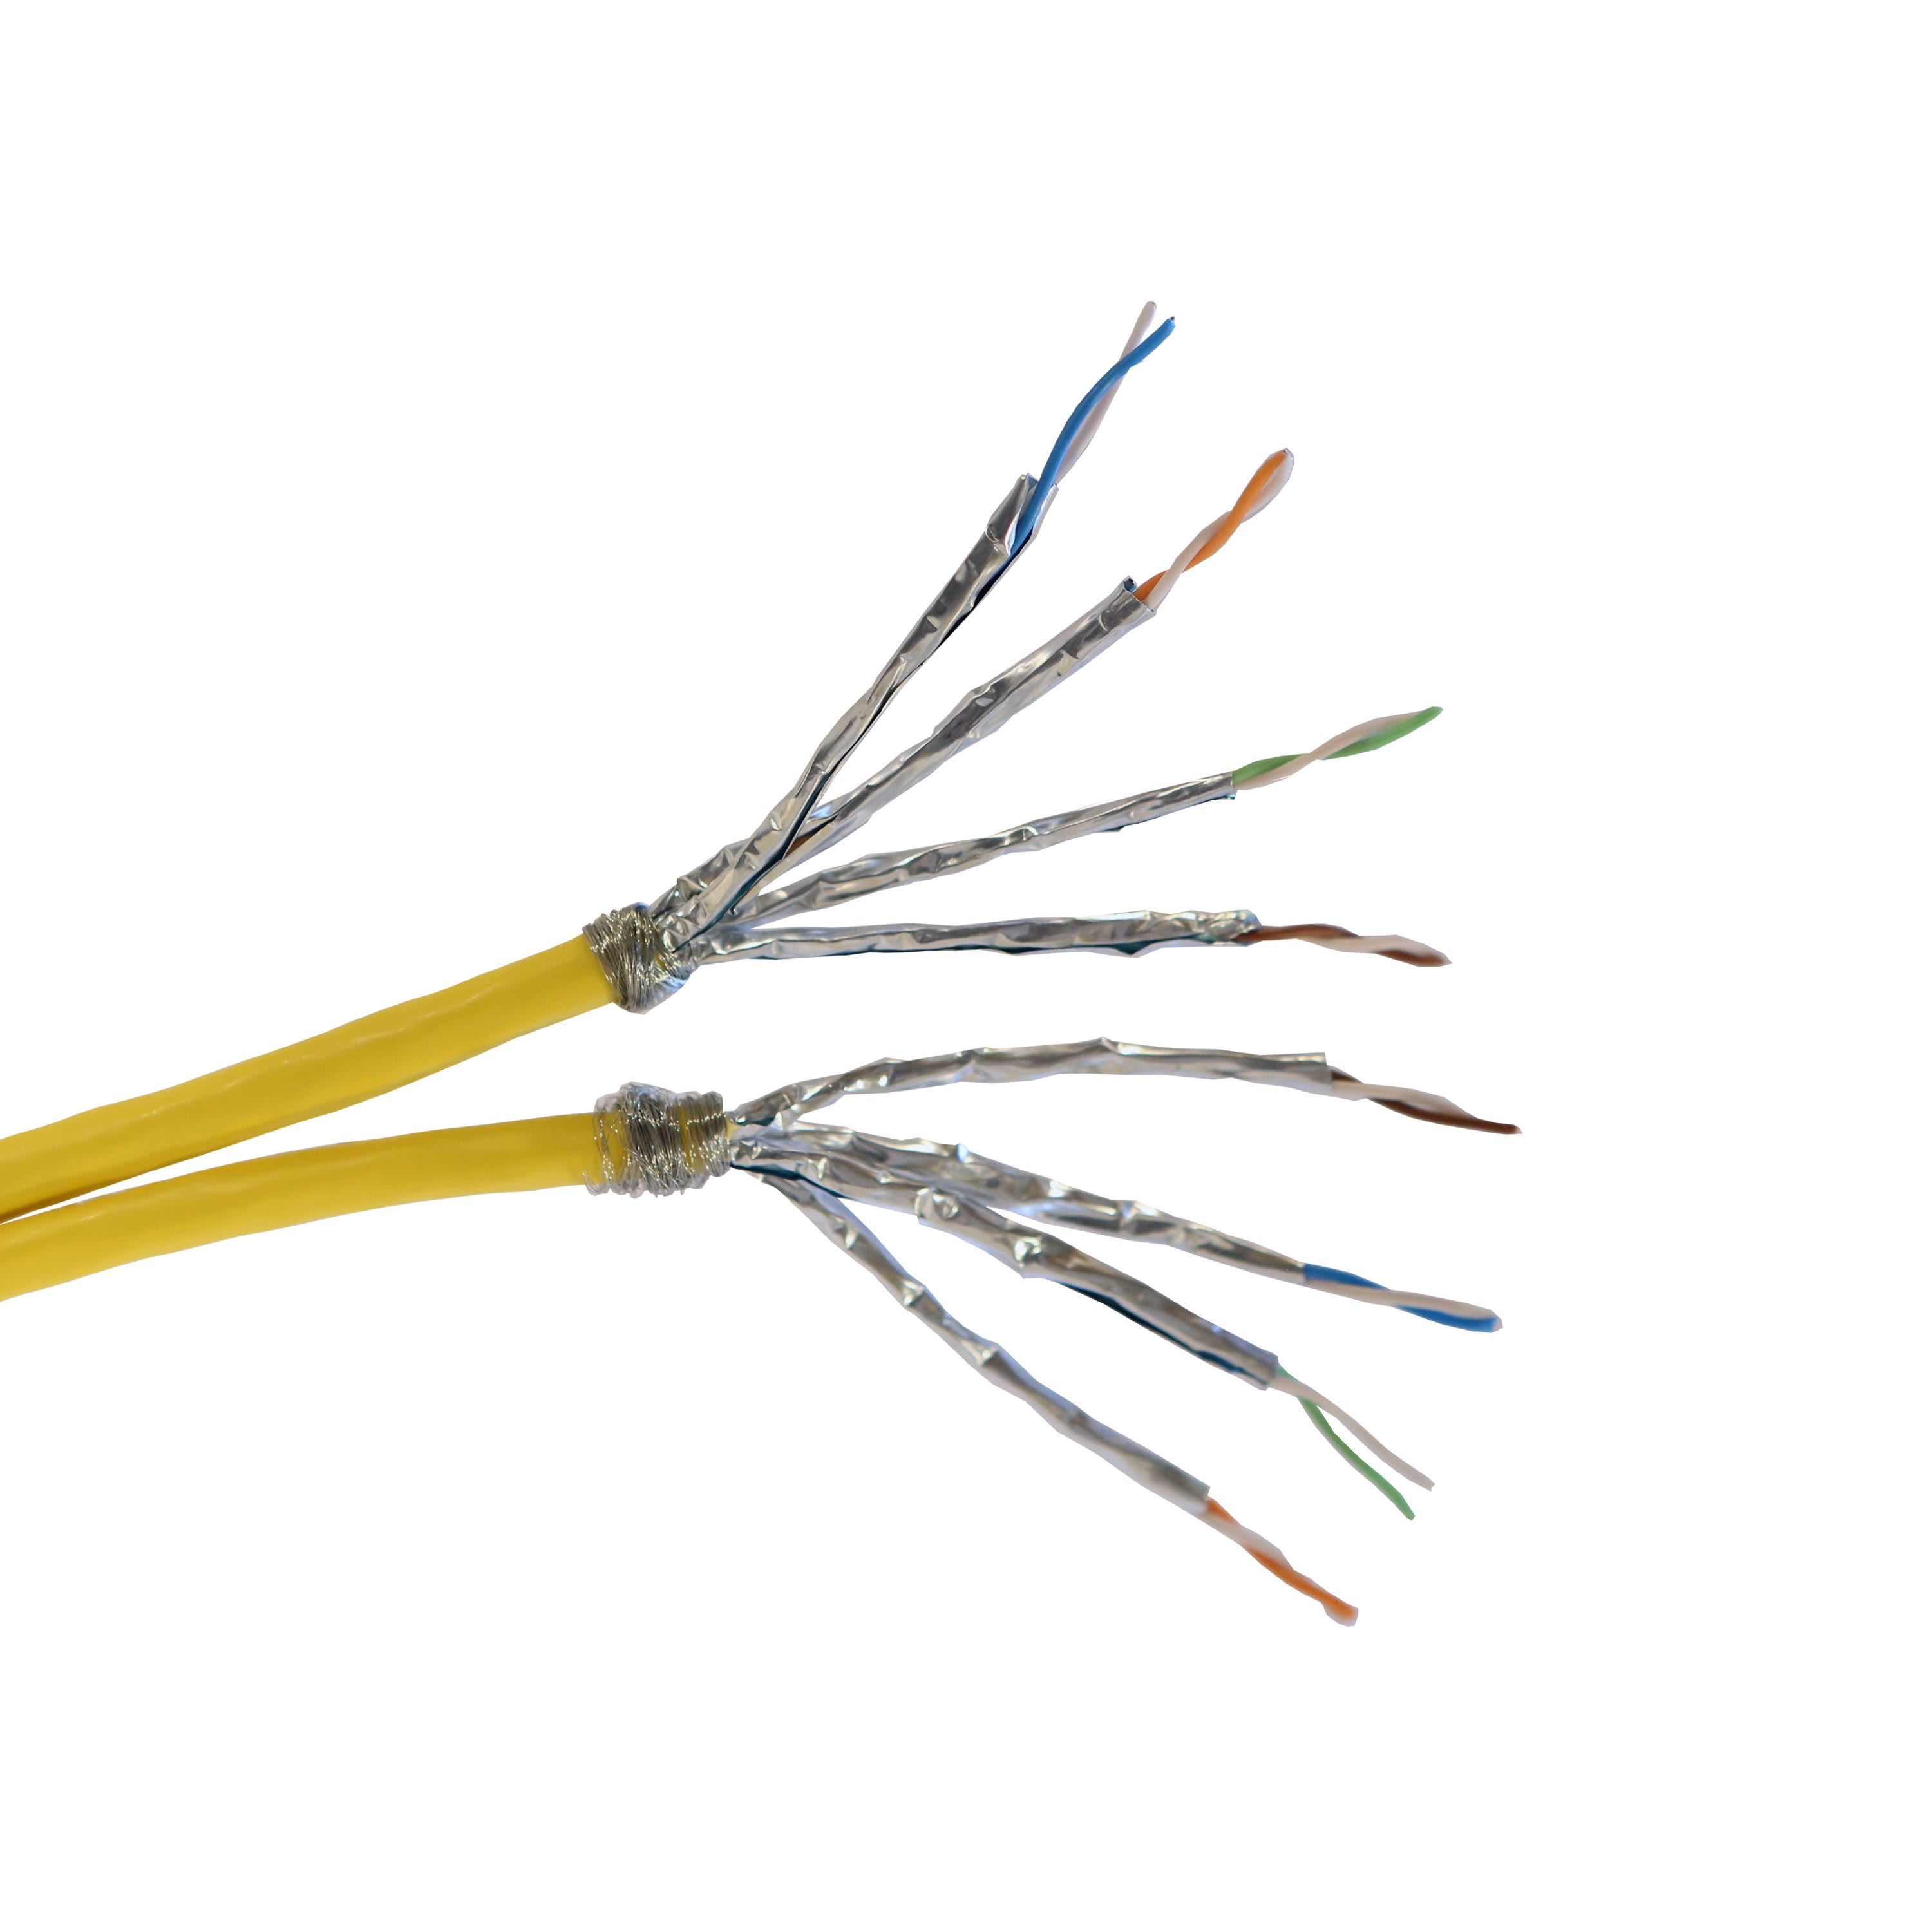 Legrand - Cable pour reseaux locaux LCS3 categorie7 S-FTP 2x4 paires torsadees - 500m